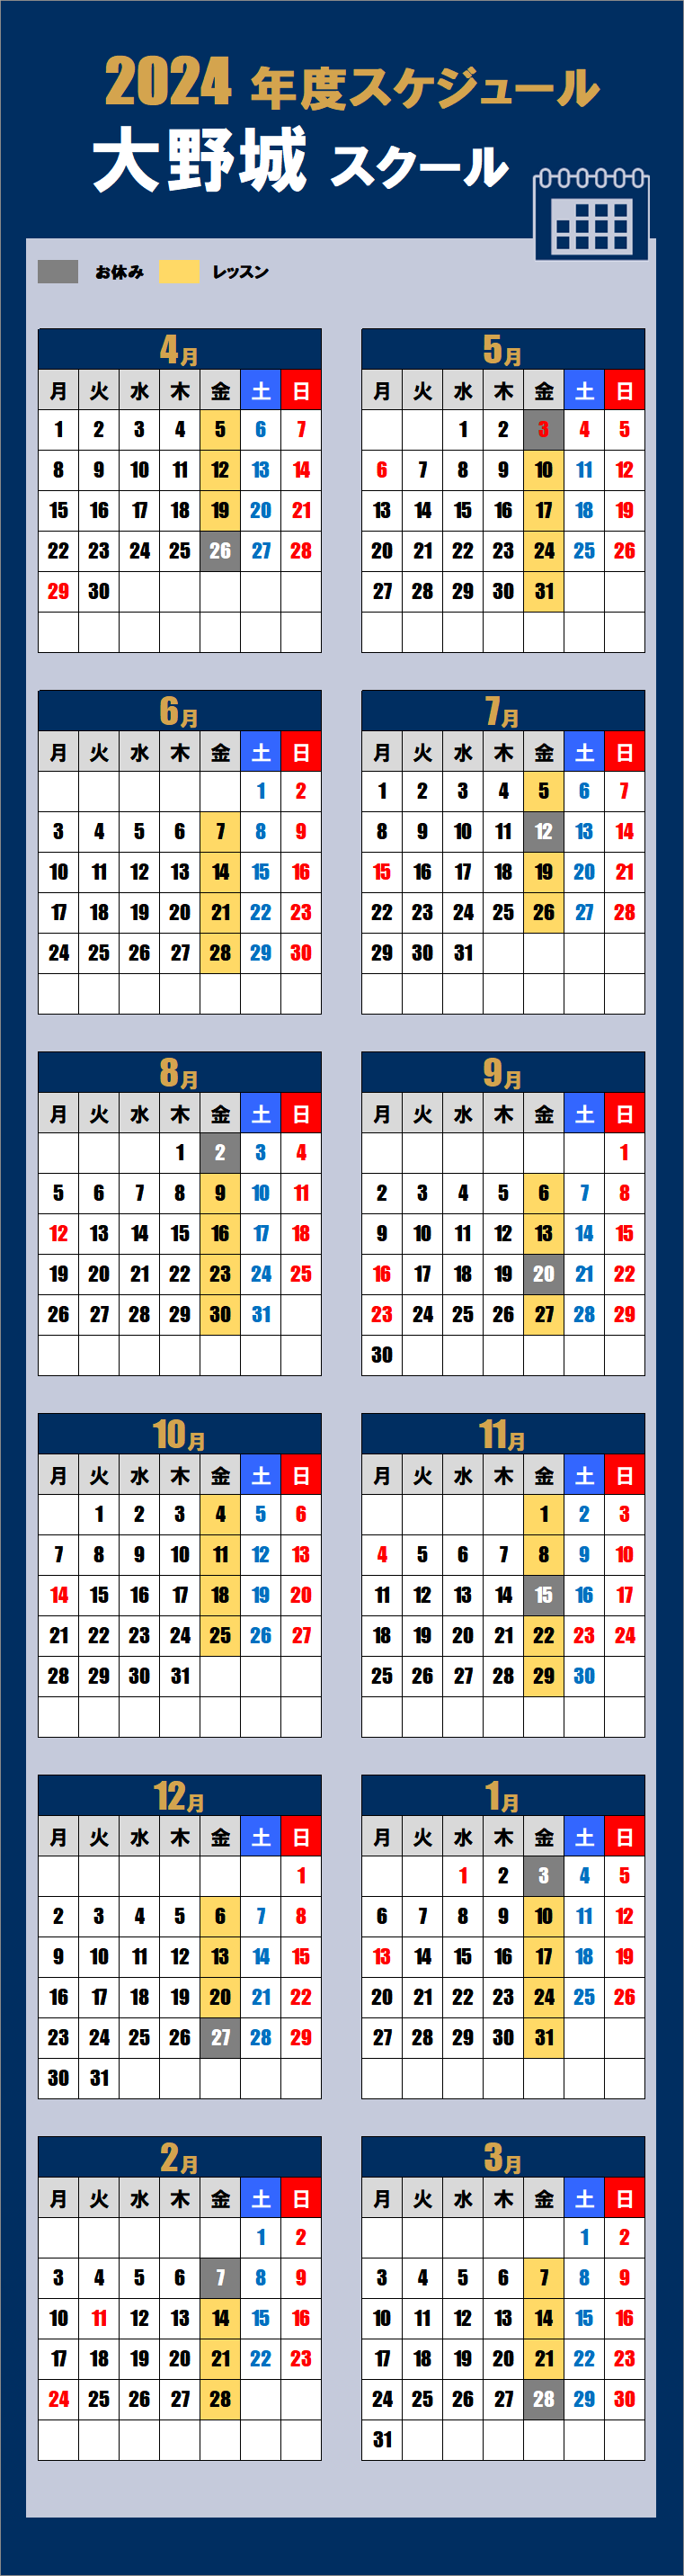 2024大野城スクールカレンダー